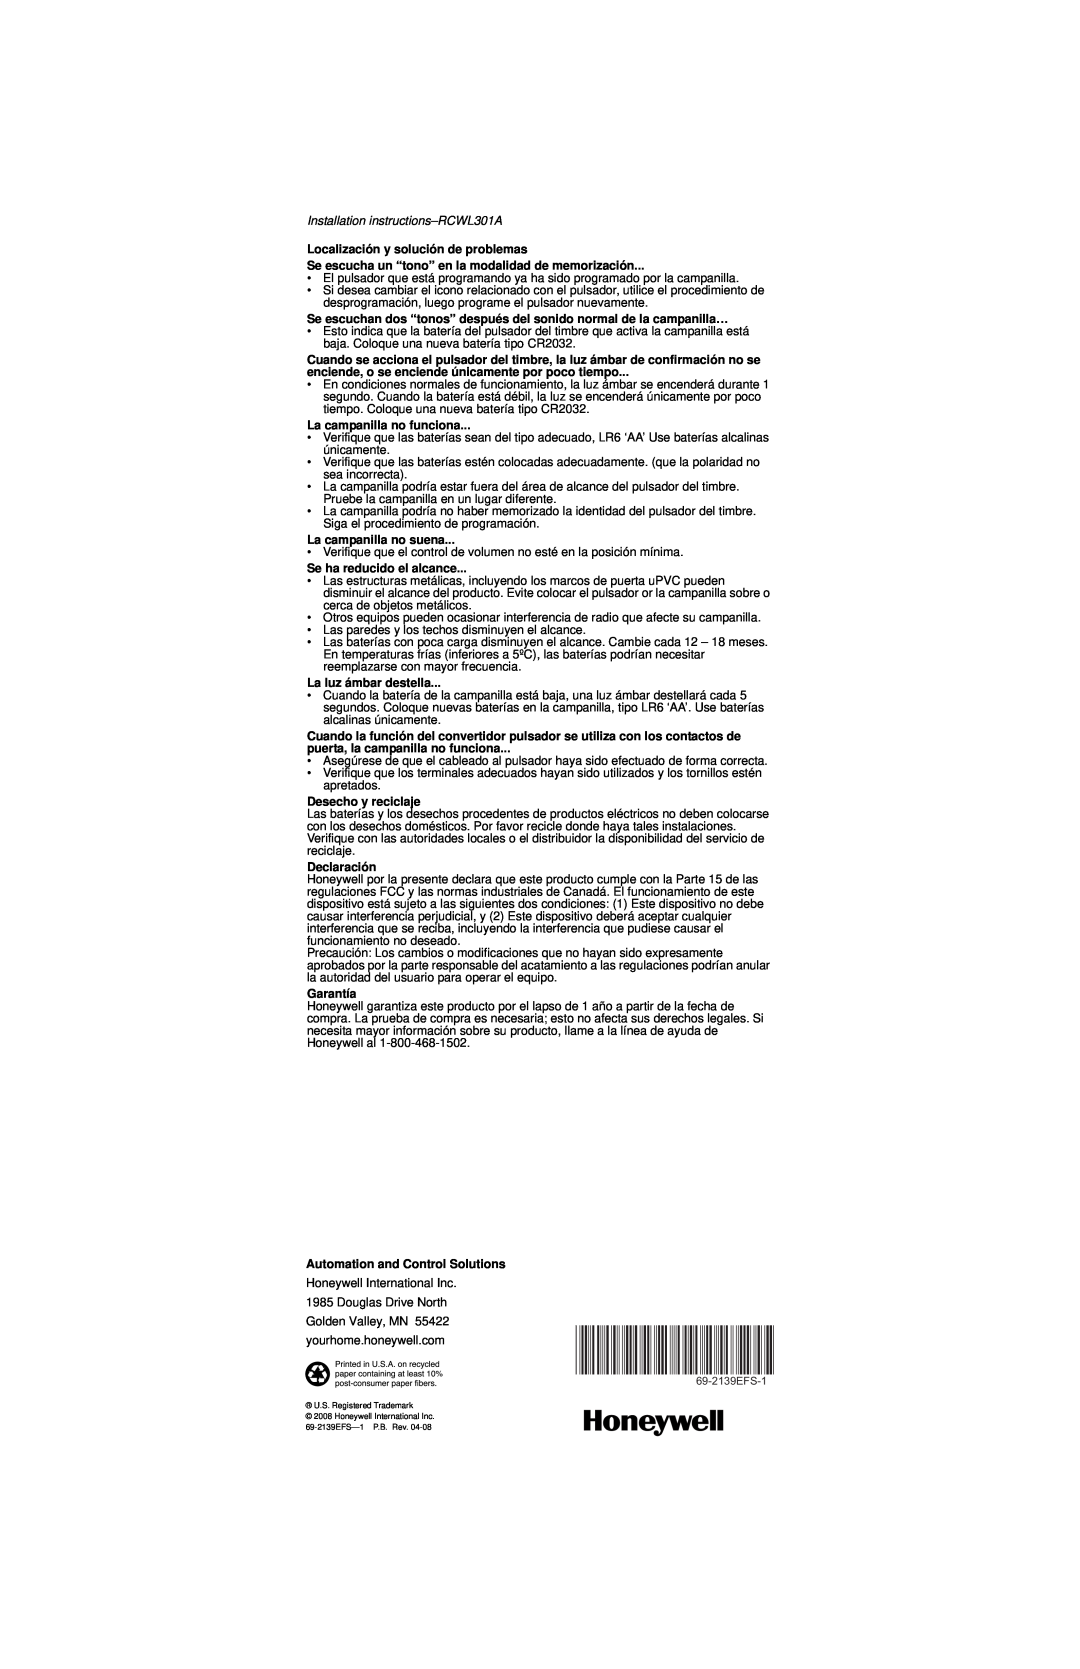 Honeywell instruction manual Installation instructions-RCWL301A, Localización y solución de problemas 